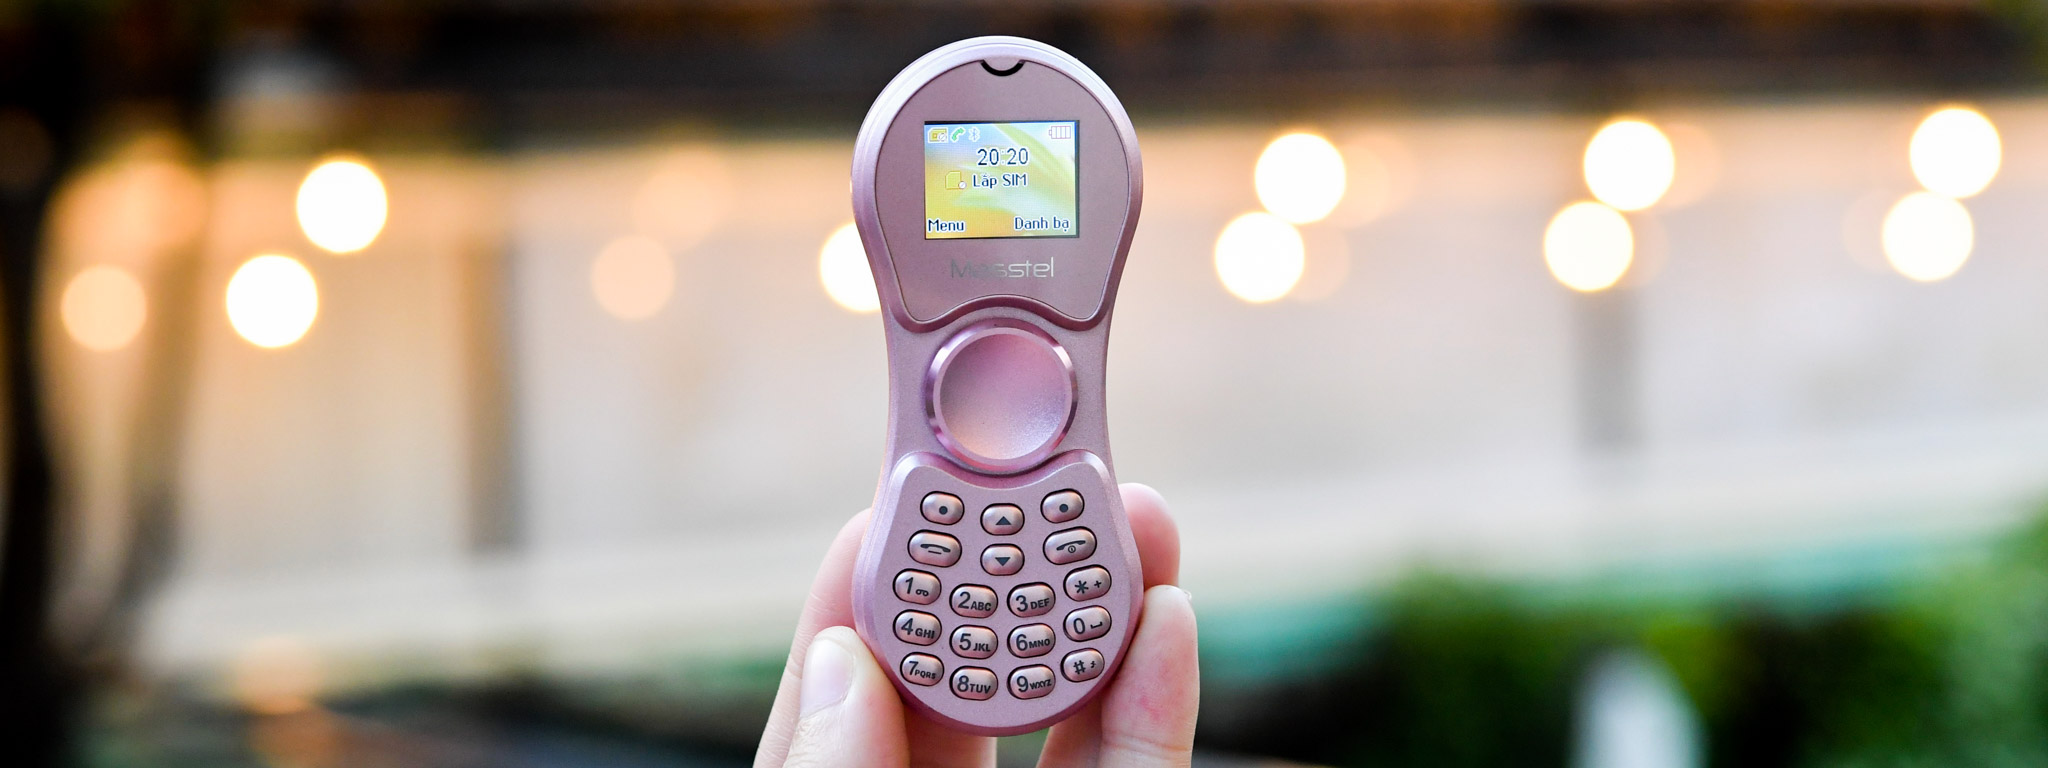 Trên tay điện thoại Masstel Spinner: điện thoại kiêm Spinner, kiêm tai nghe Bluetooth, giá 500k